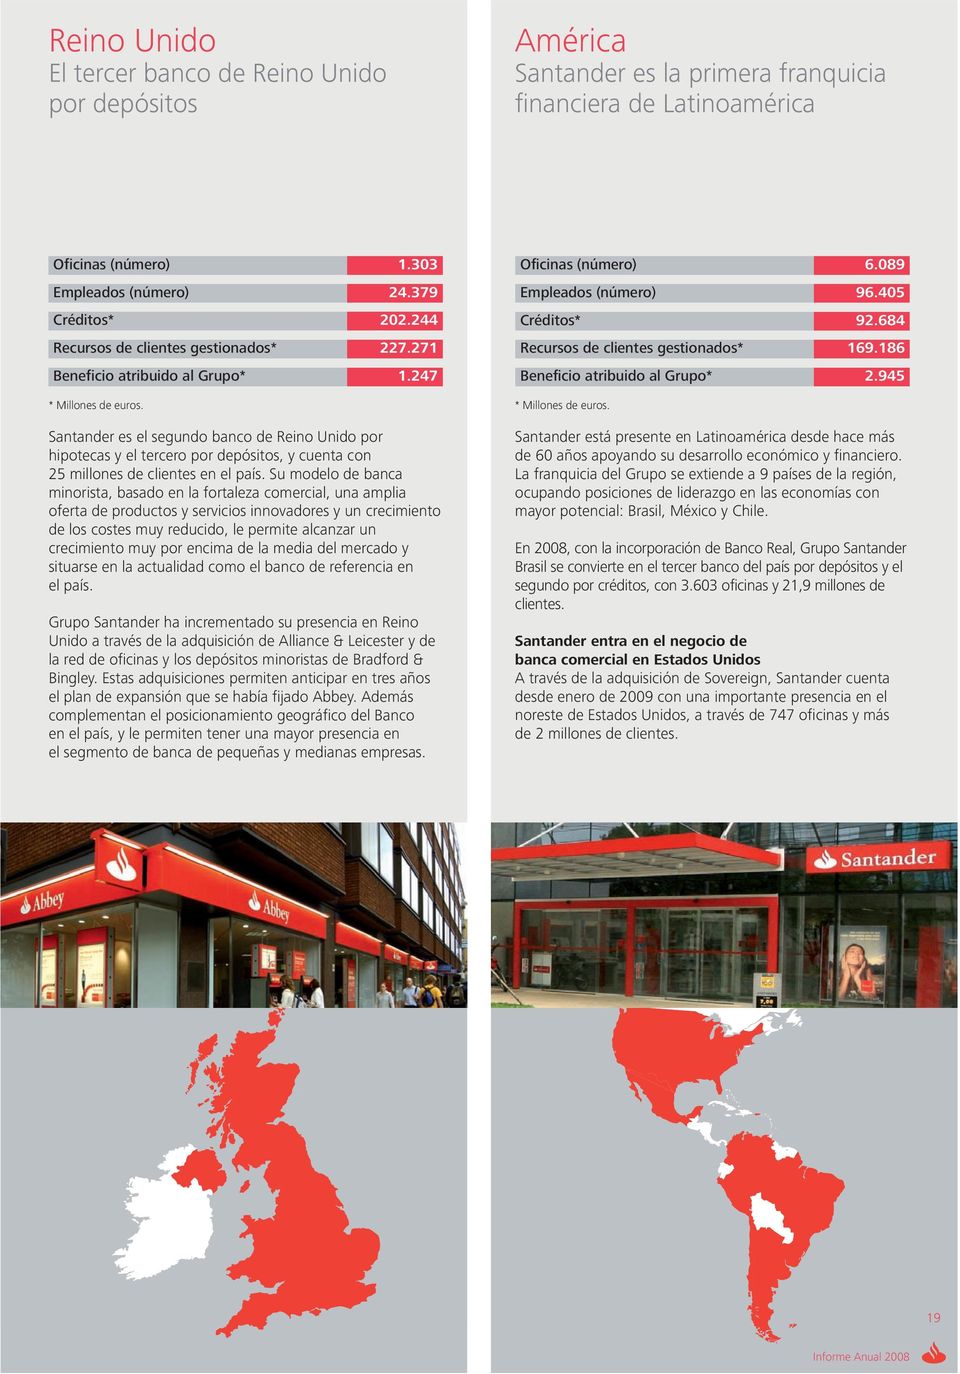 Santander es el segundo banco de Reino Unido por hipotecas y el tercero por depósitos, y cuenta con 25 millones de clientes en el país.